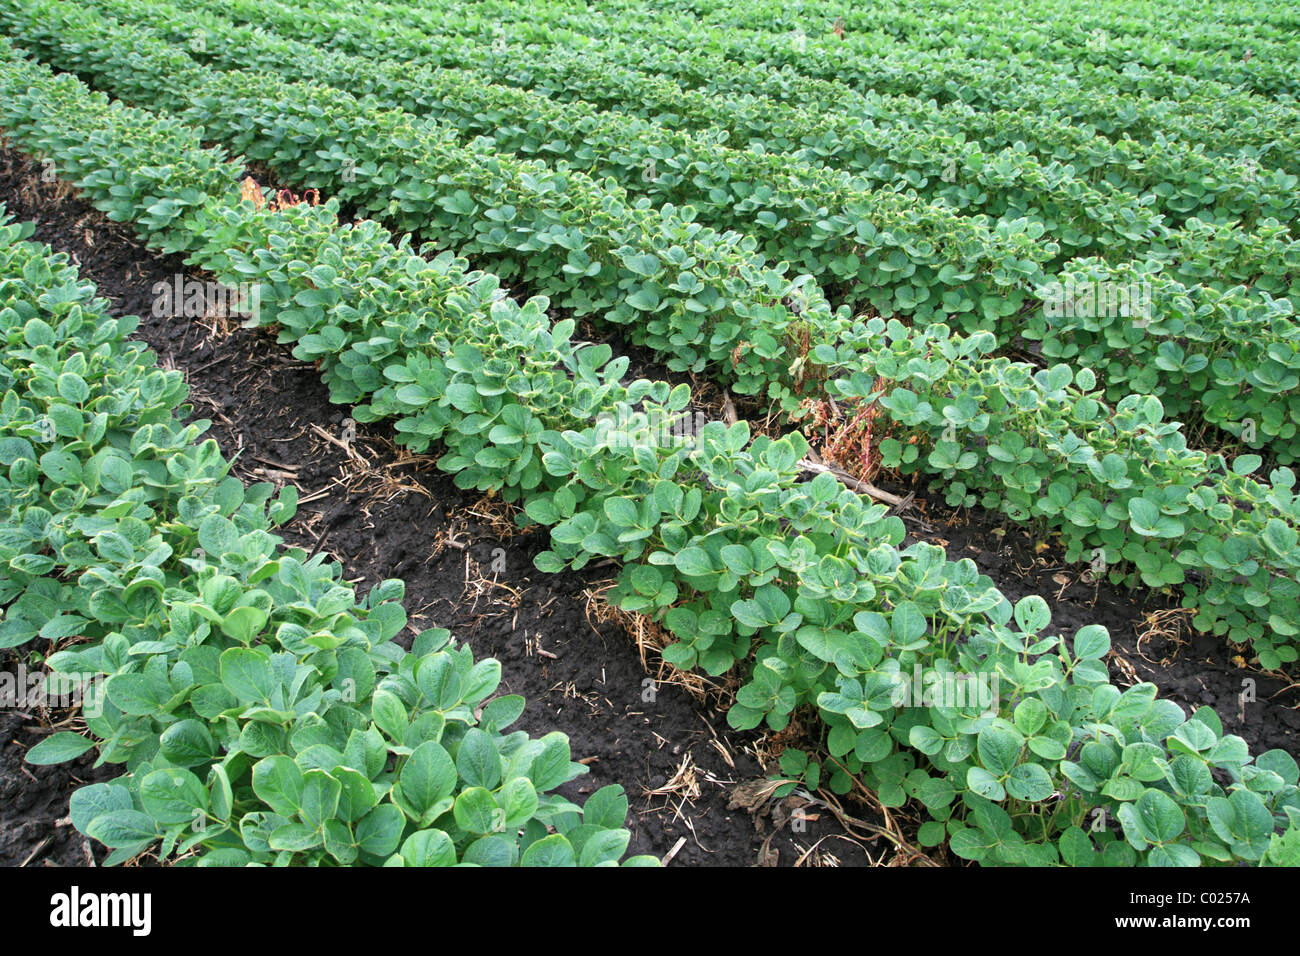 soybean field with rows of soya bean plants in dark wet soil Stock Photo